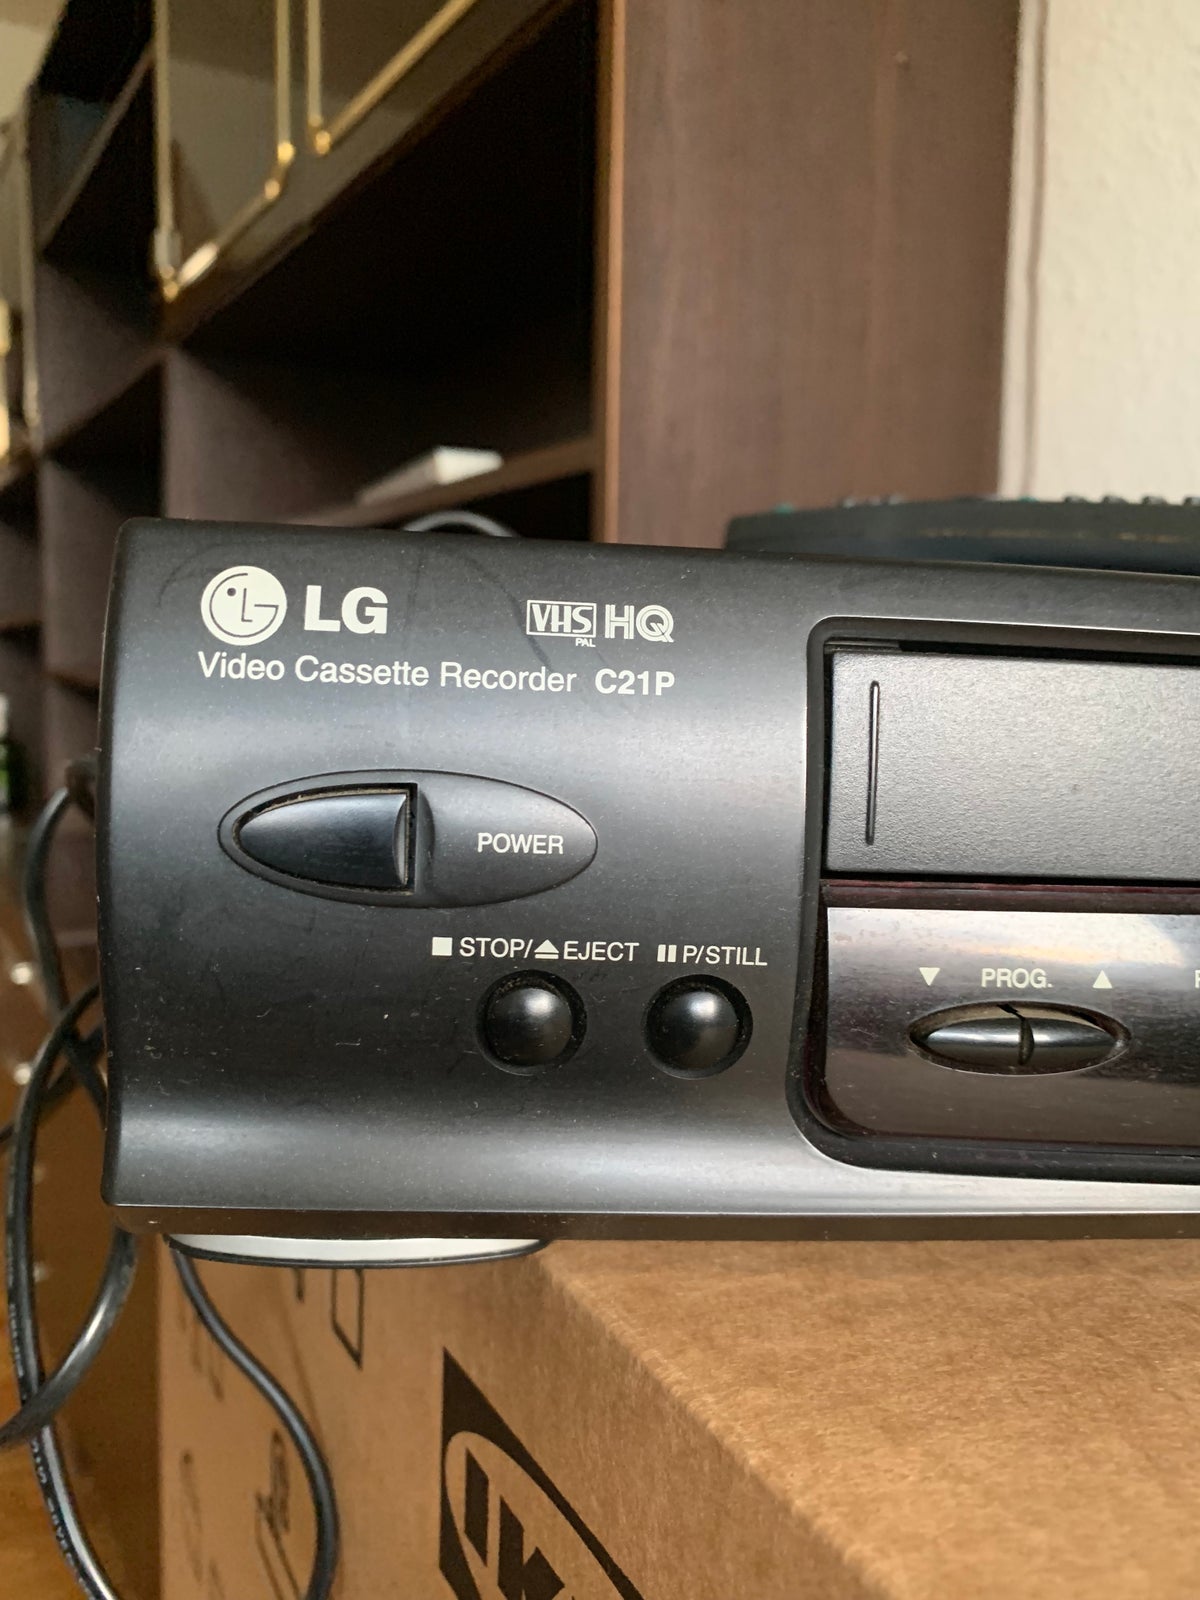 VHS videomaskine, LG, Rimelig